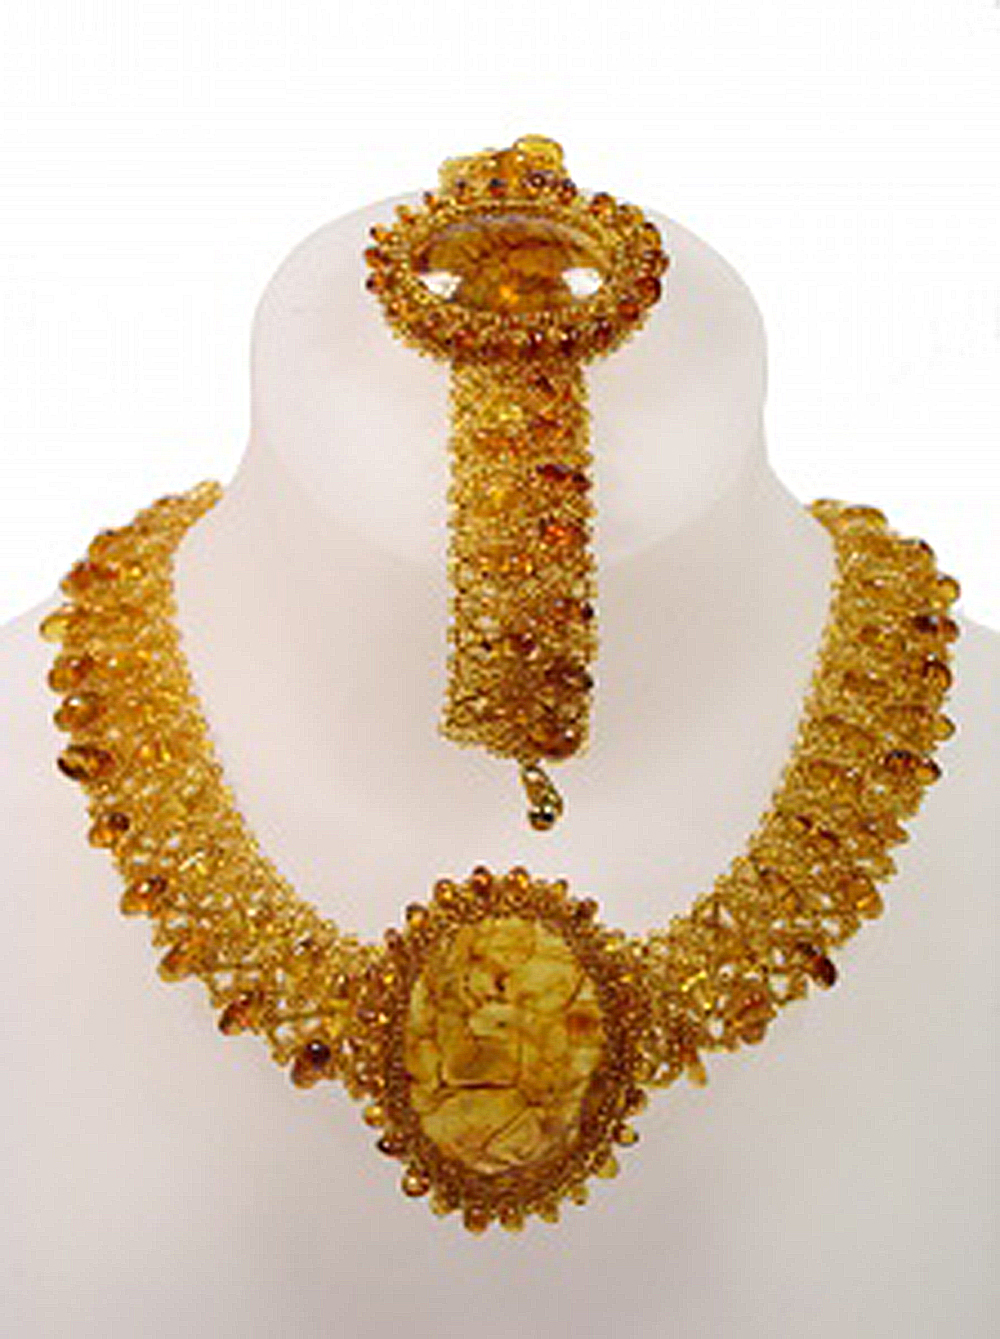 Яркий комплект из балтийского янтаря и бисера: ожерелье, браслет